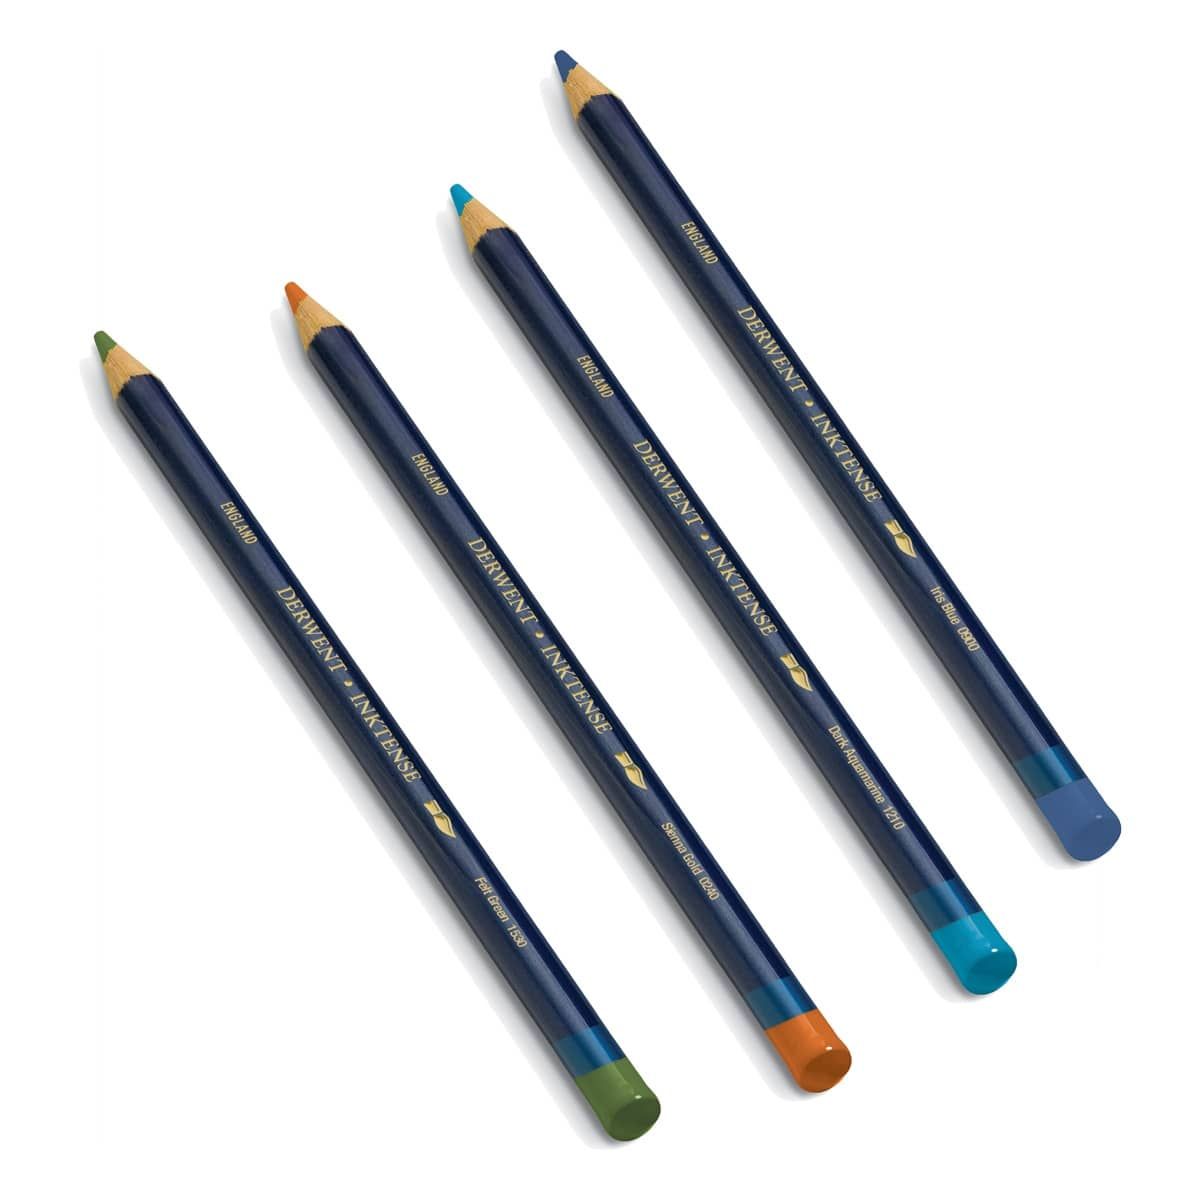 Derwent Inktense Pencils & Sets